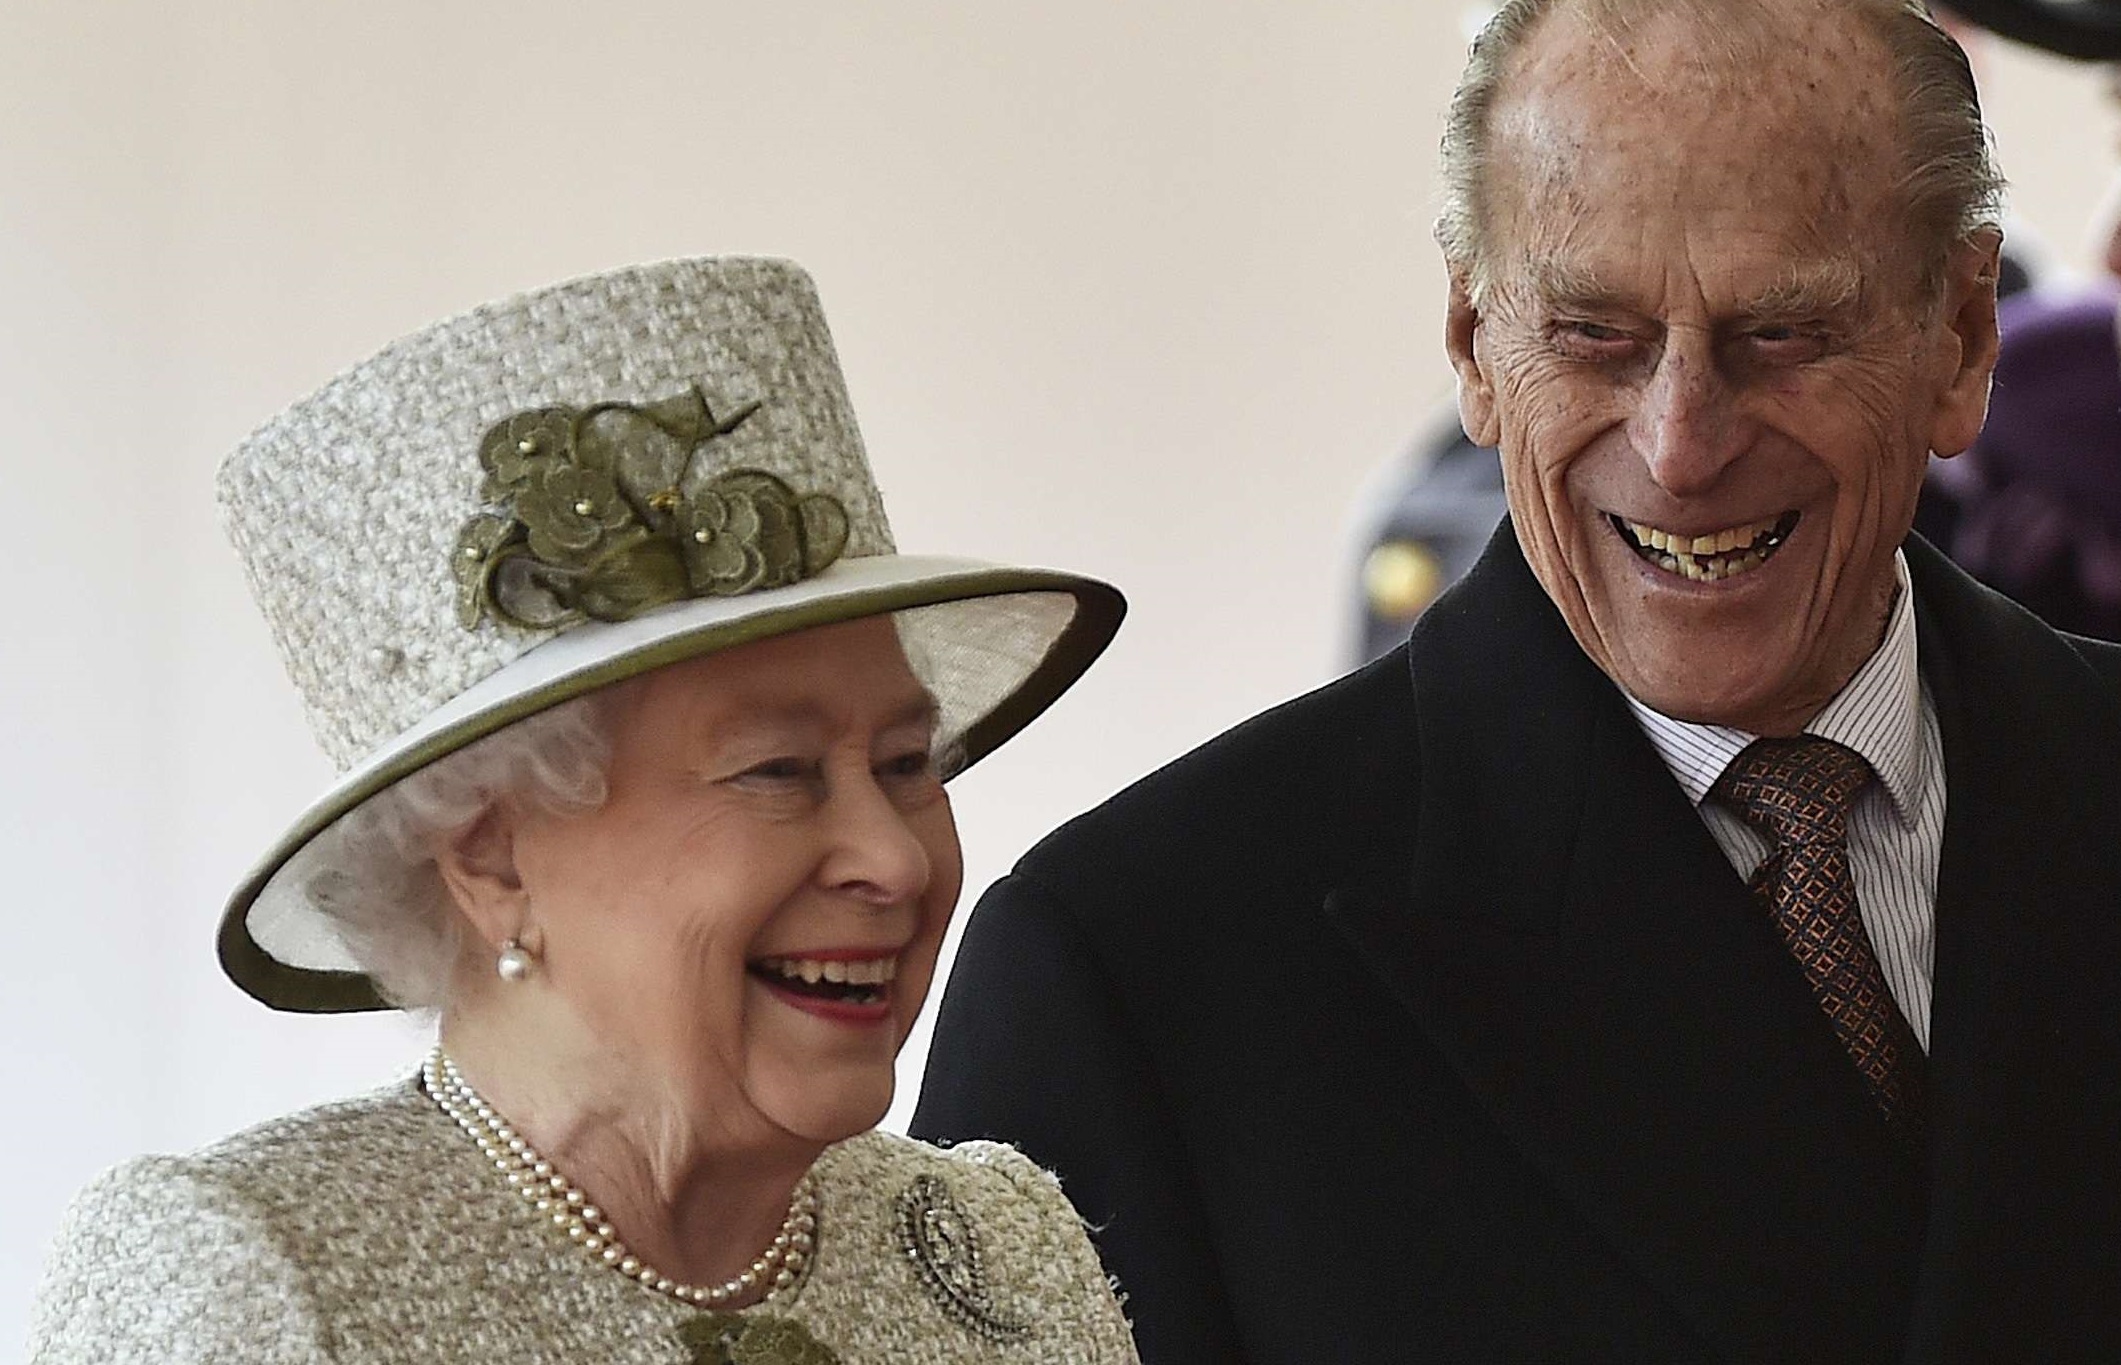 Prince Philip Was No Saint, But He Was Queen Elizabeth II's Rock - Bloomberg